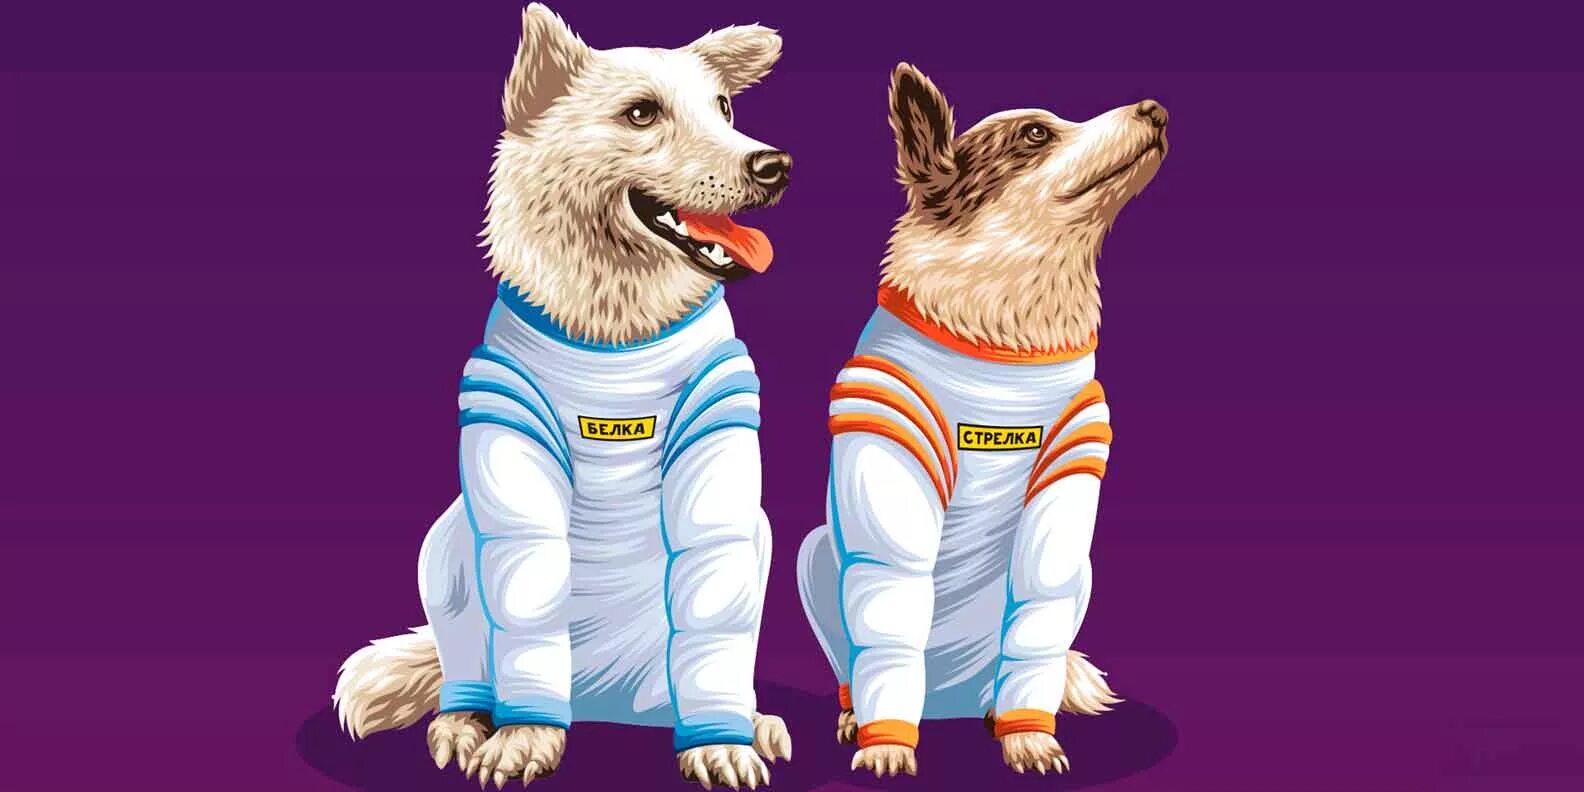 Картинка белка и стрелка в космосе. Белка и стрелка космонавты в космосе. Белка и стрелка собаки космонавты. Белка собака космонавт. Стрелка собака космонавт.